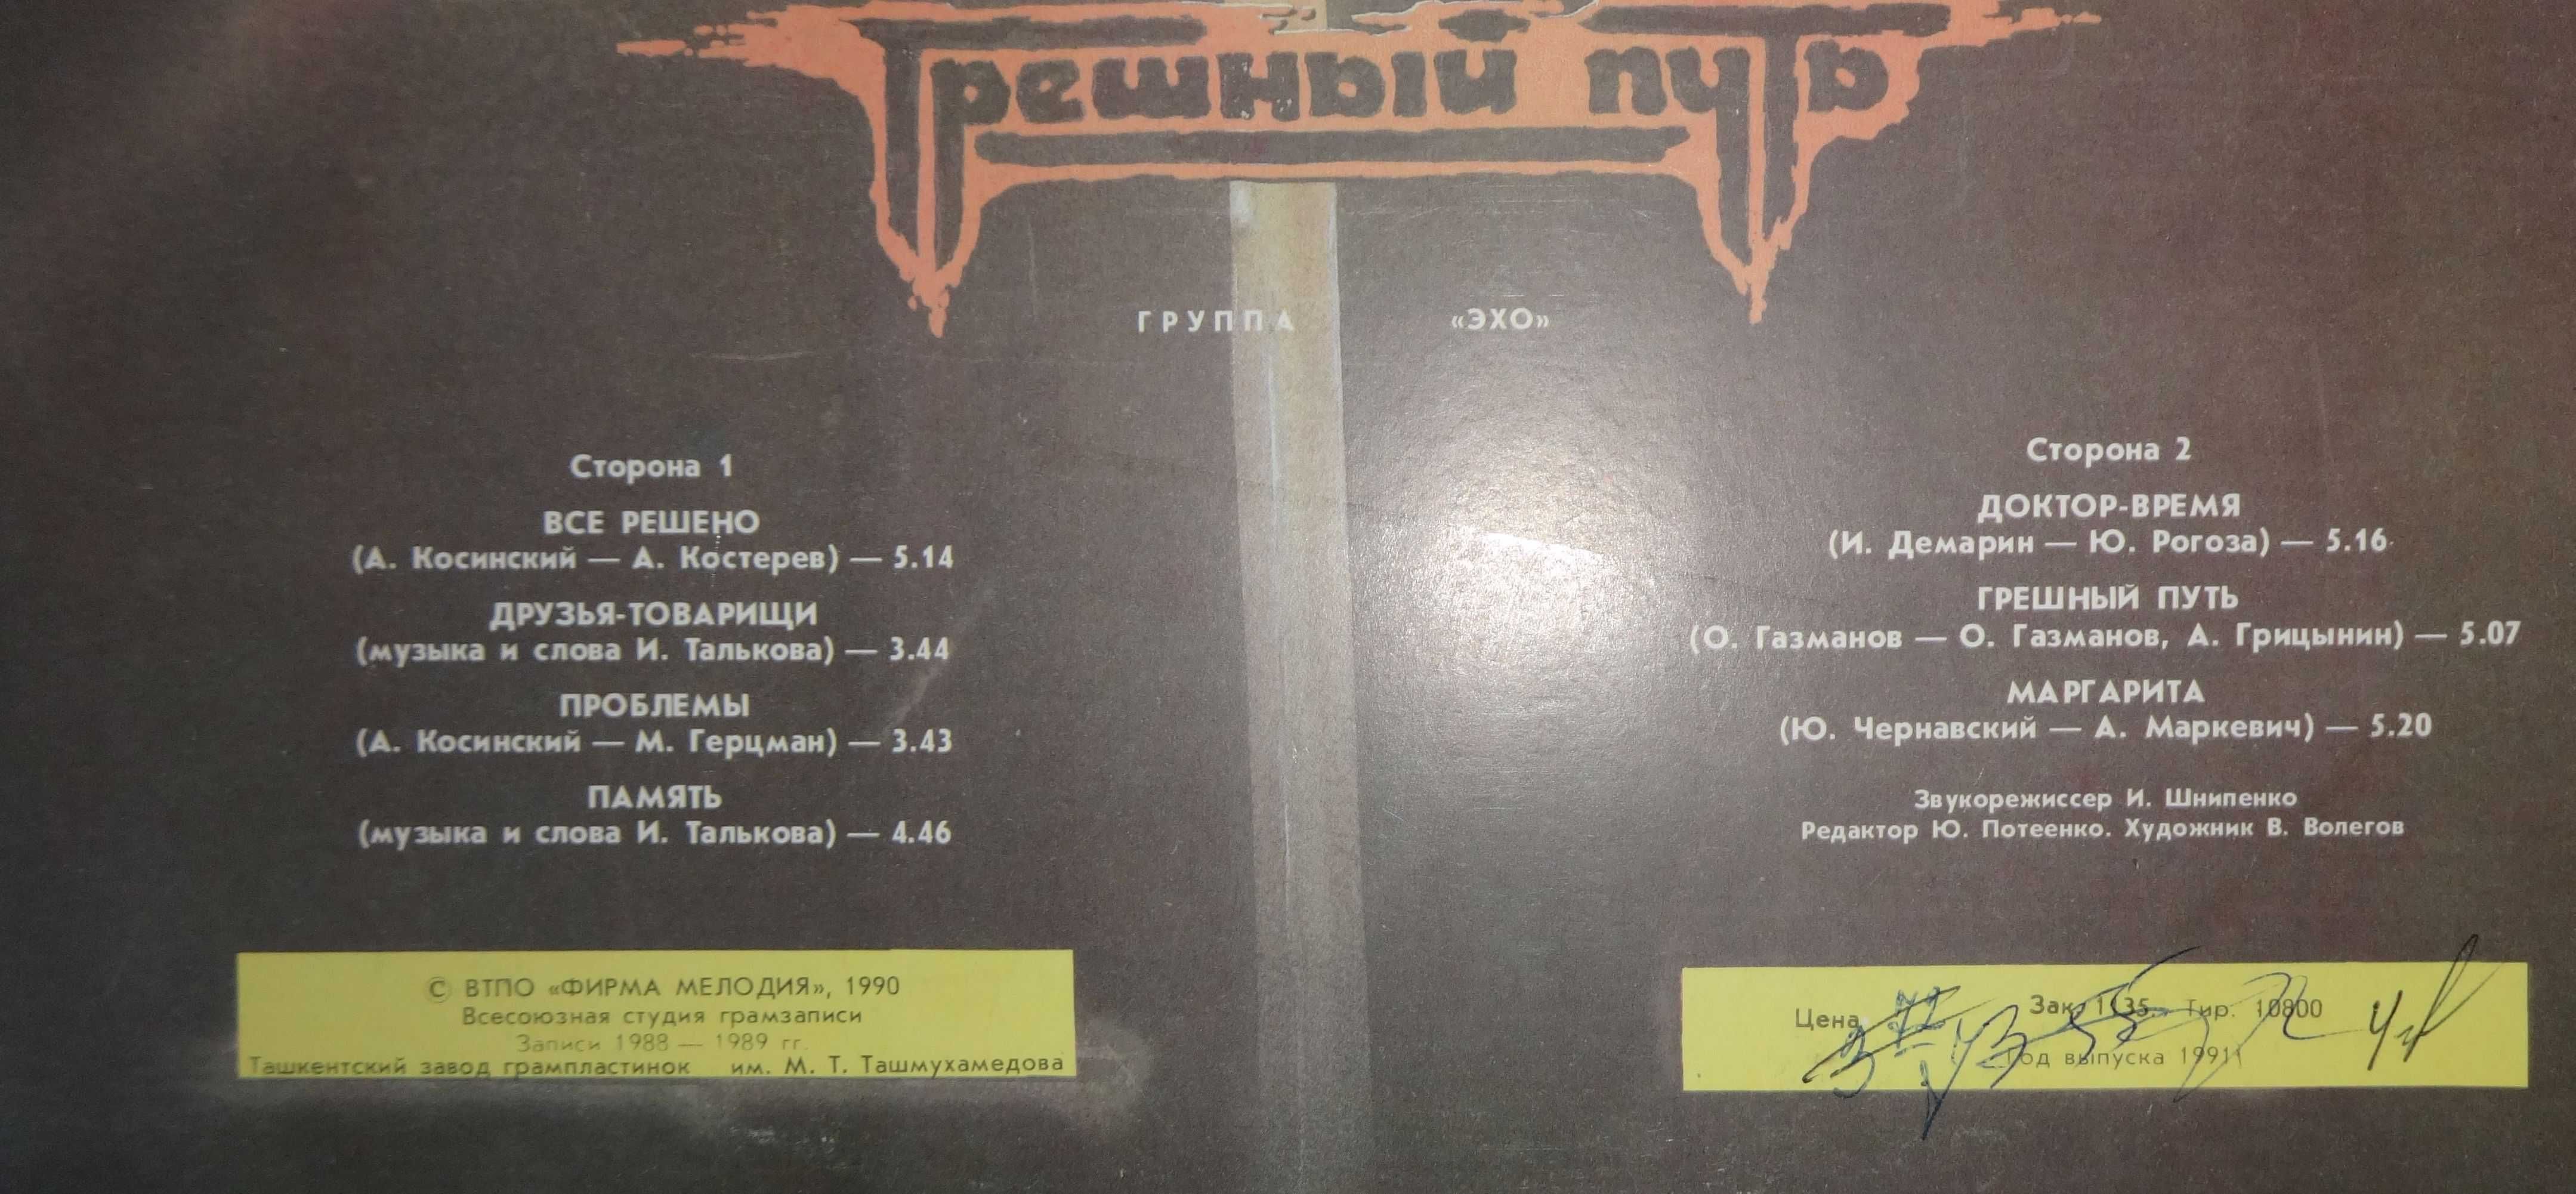 Пластинка винил  "Грешный путь" Валерий Леонтьев